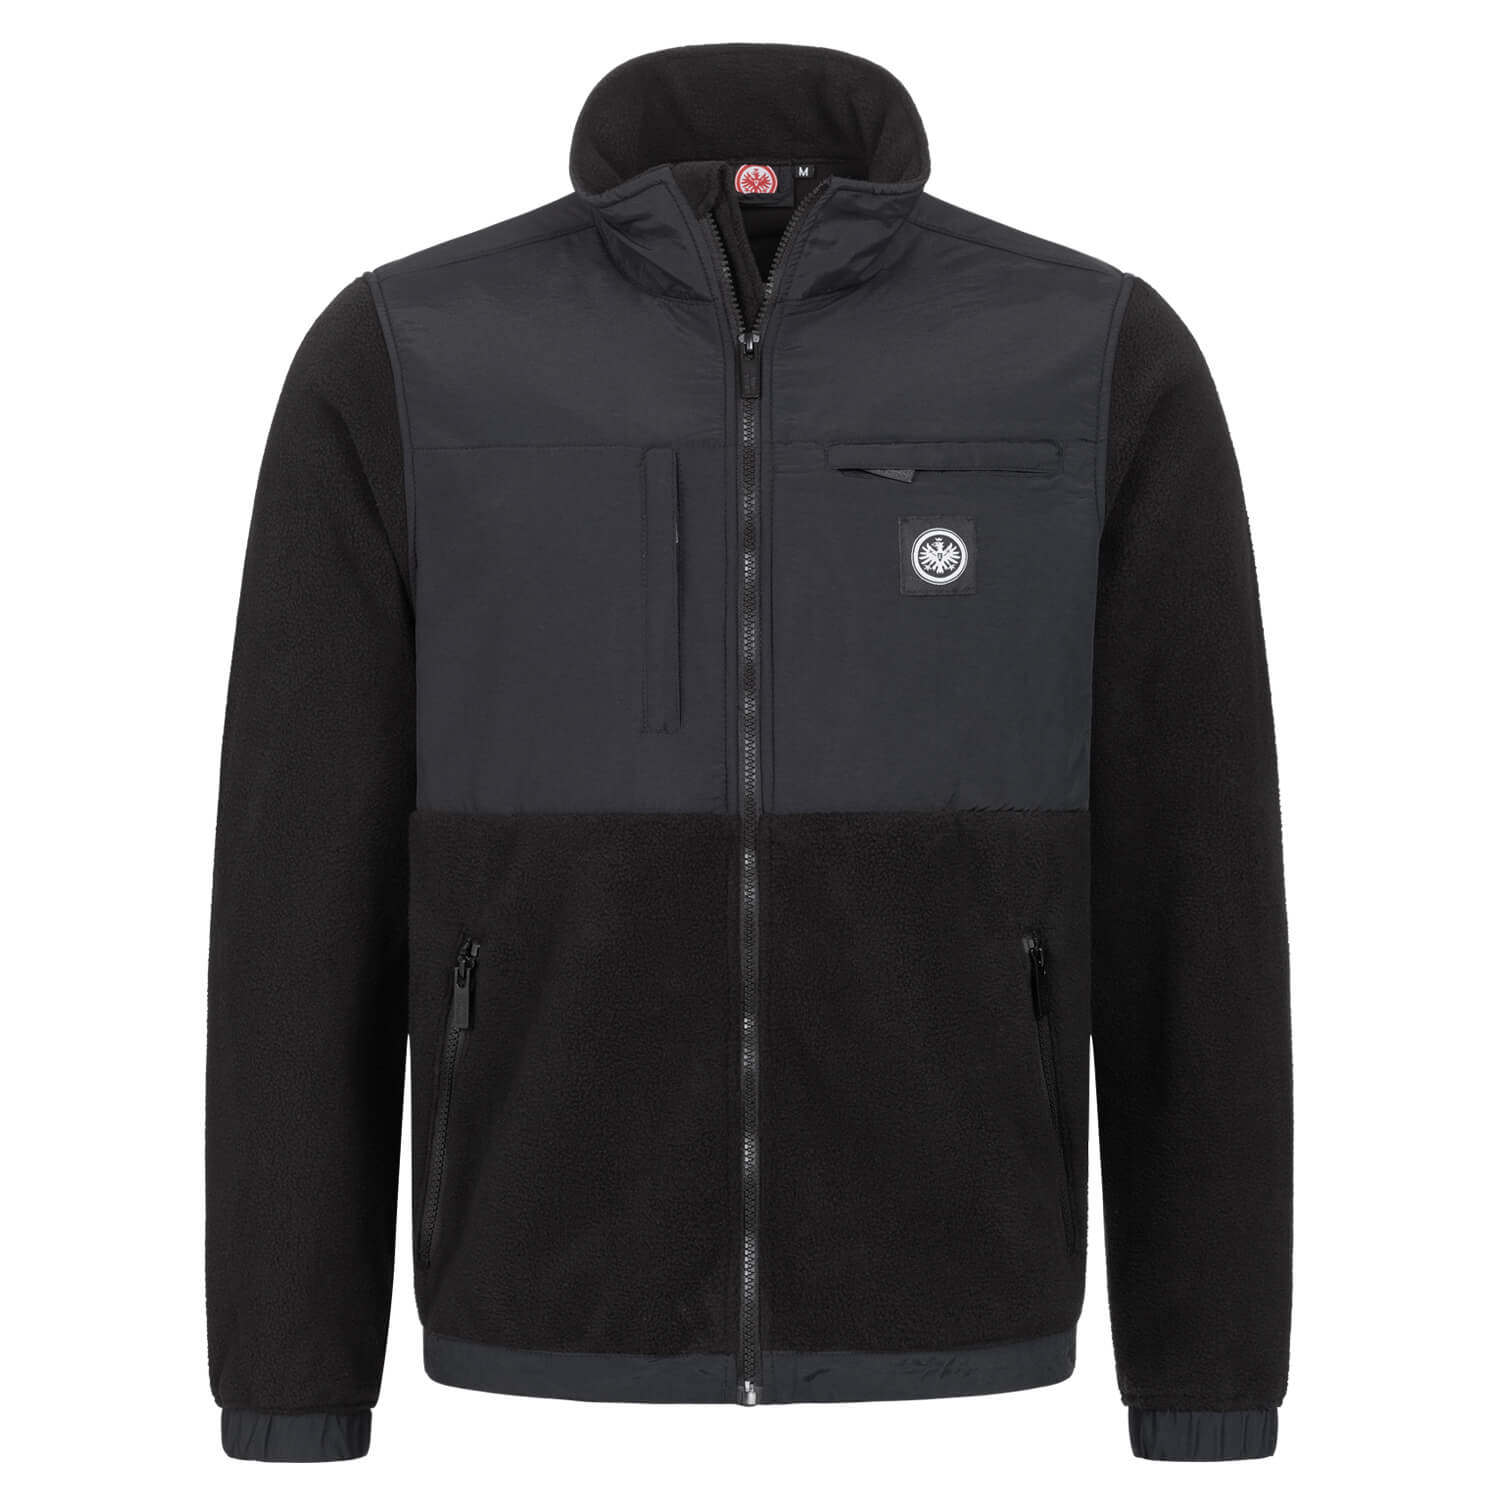 Bild 1: Premium Fleece Jacket